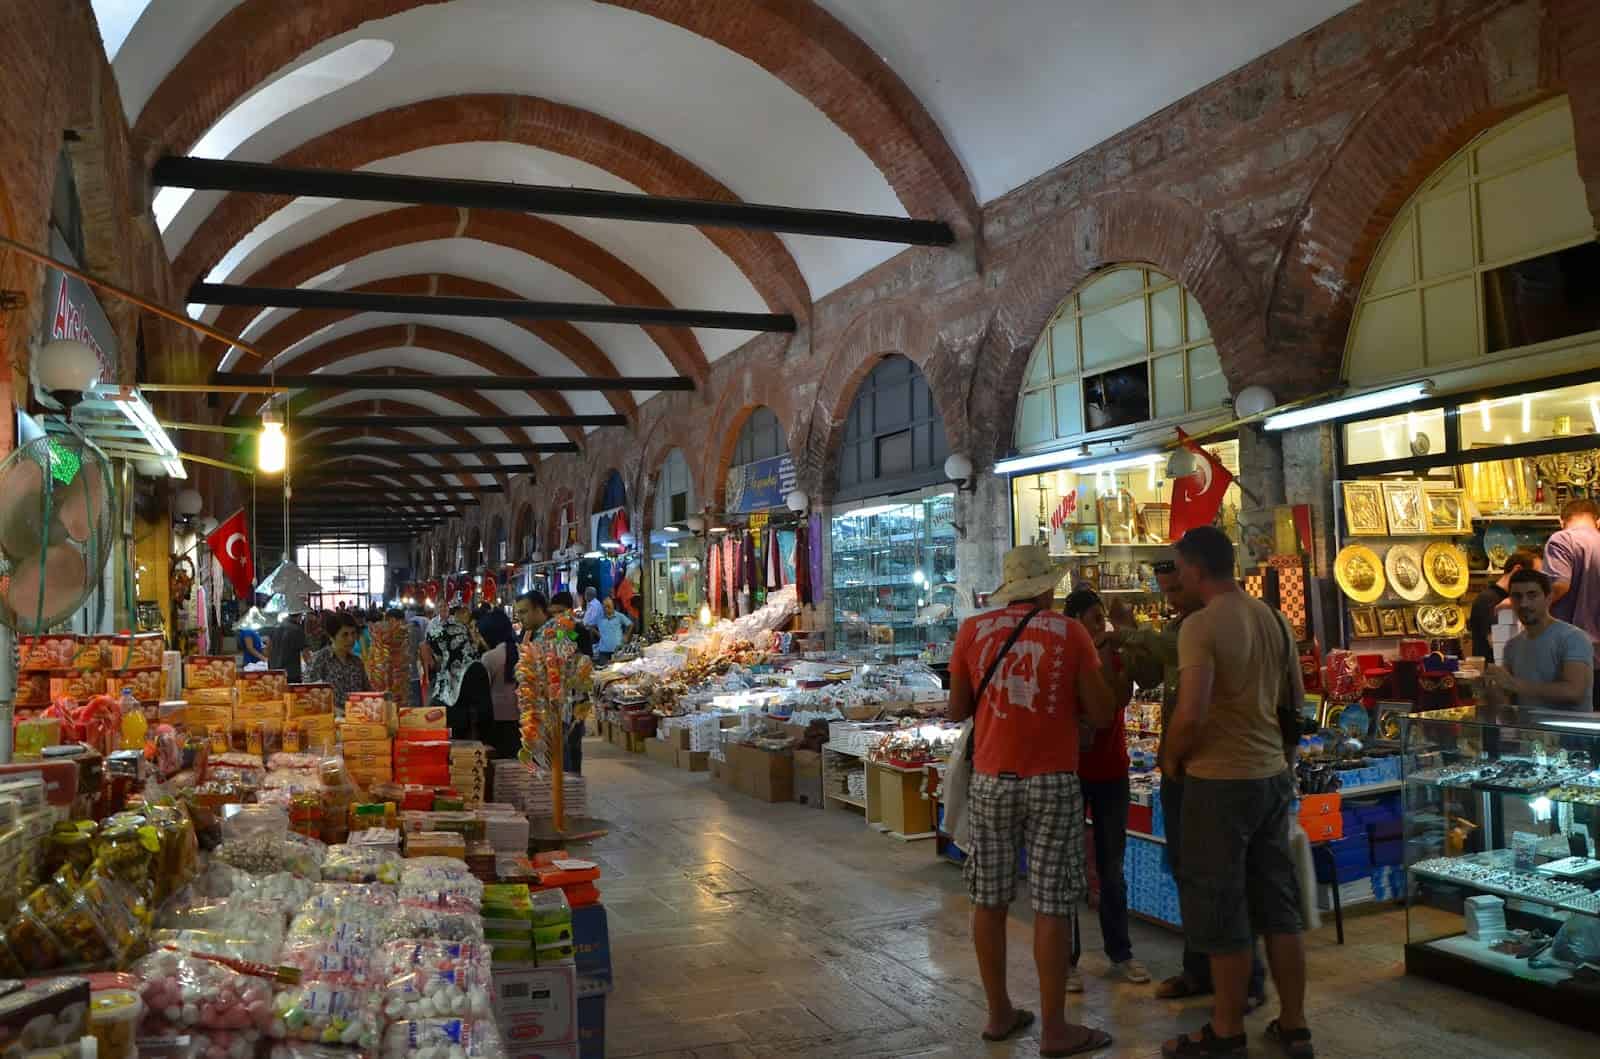 Arasta Bazaar at Selimiye Mosque in Edirne, Turkey